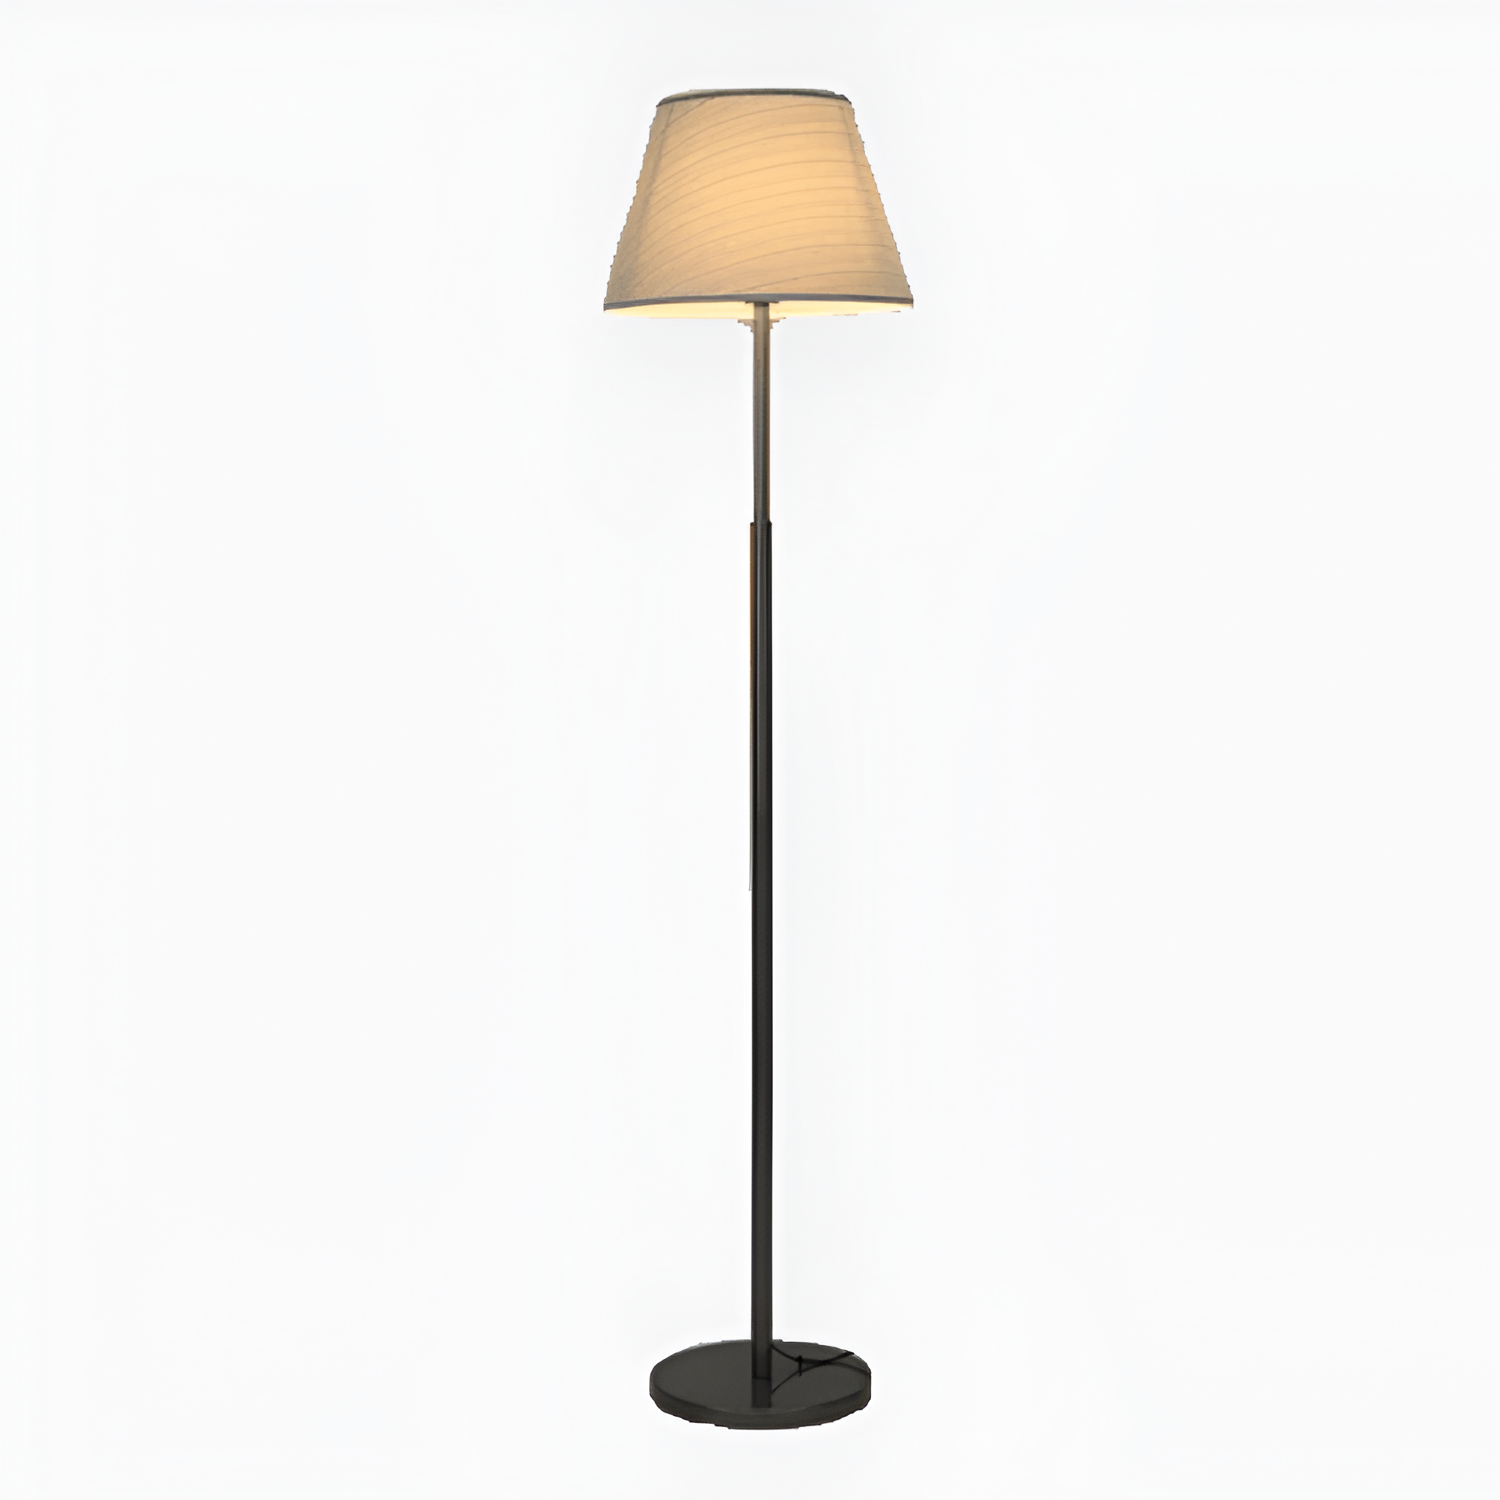 Homing Lamp